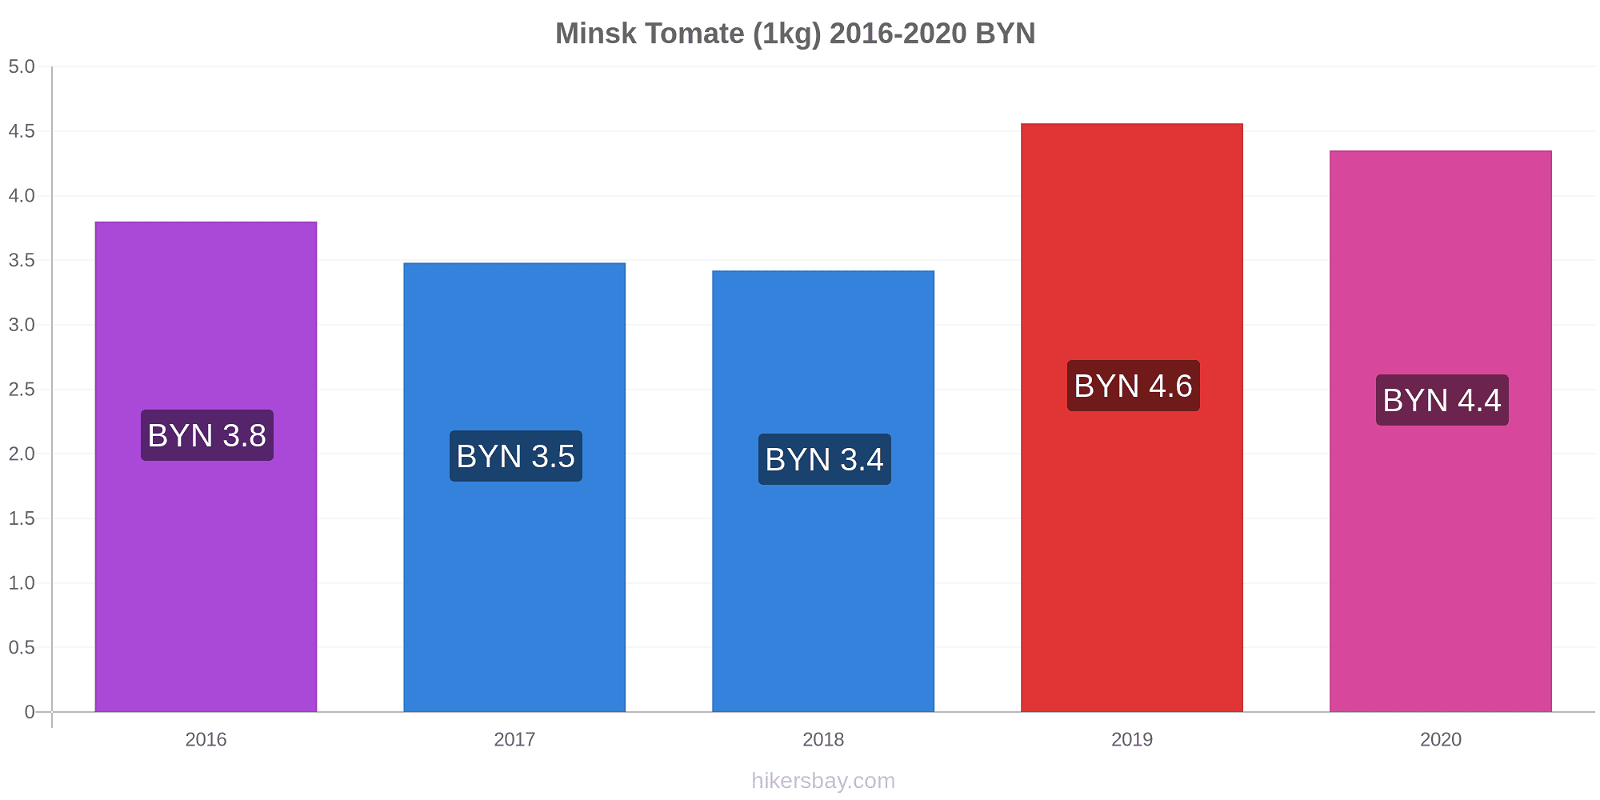 Minsk cambios de precios Tomate (1kg) hikersbay.com